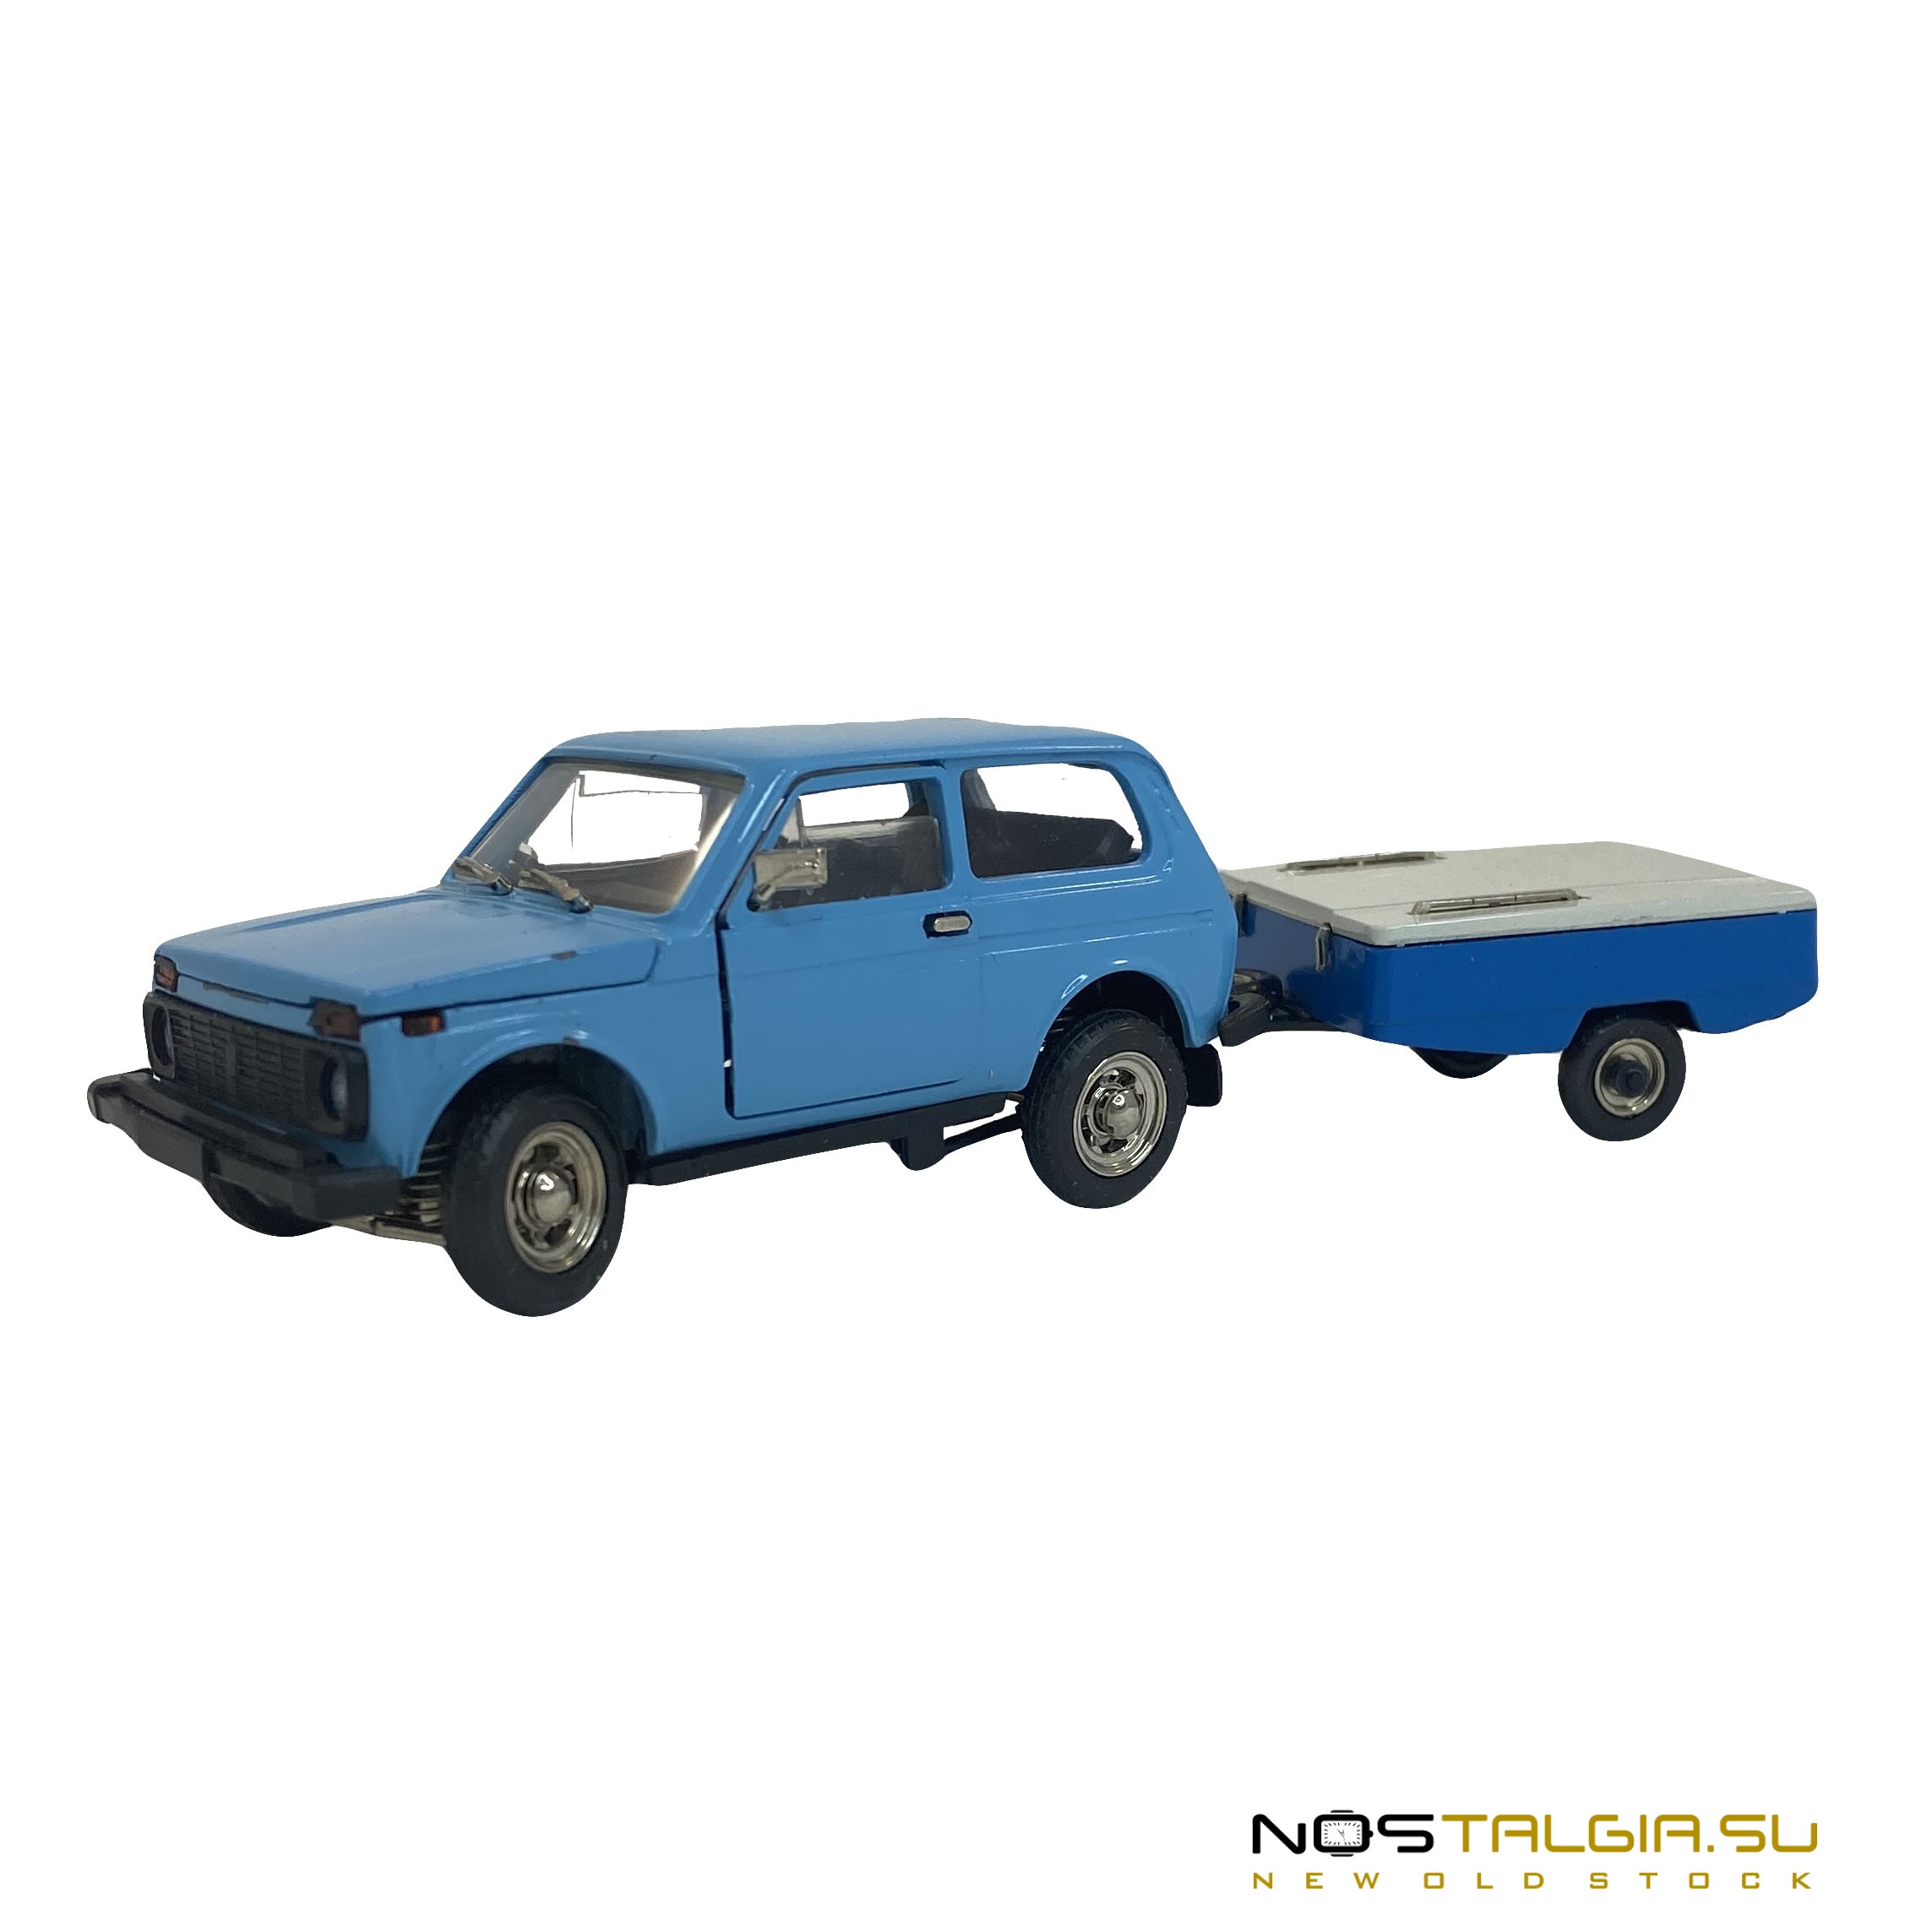 比例模型VAZ-2121尼瓦与Skif拖车,在苏联制造,在良好的条件